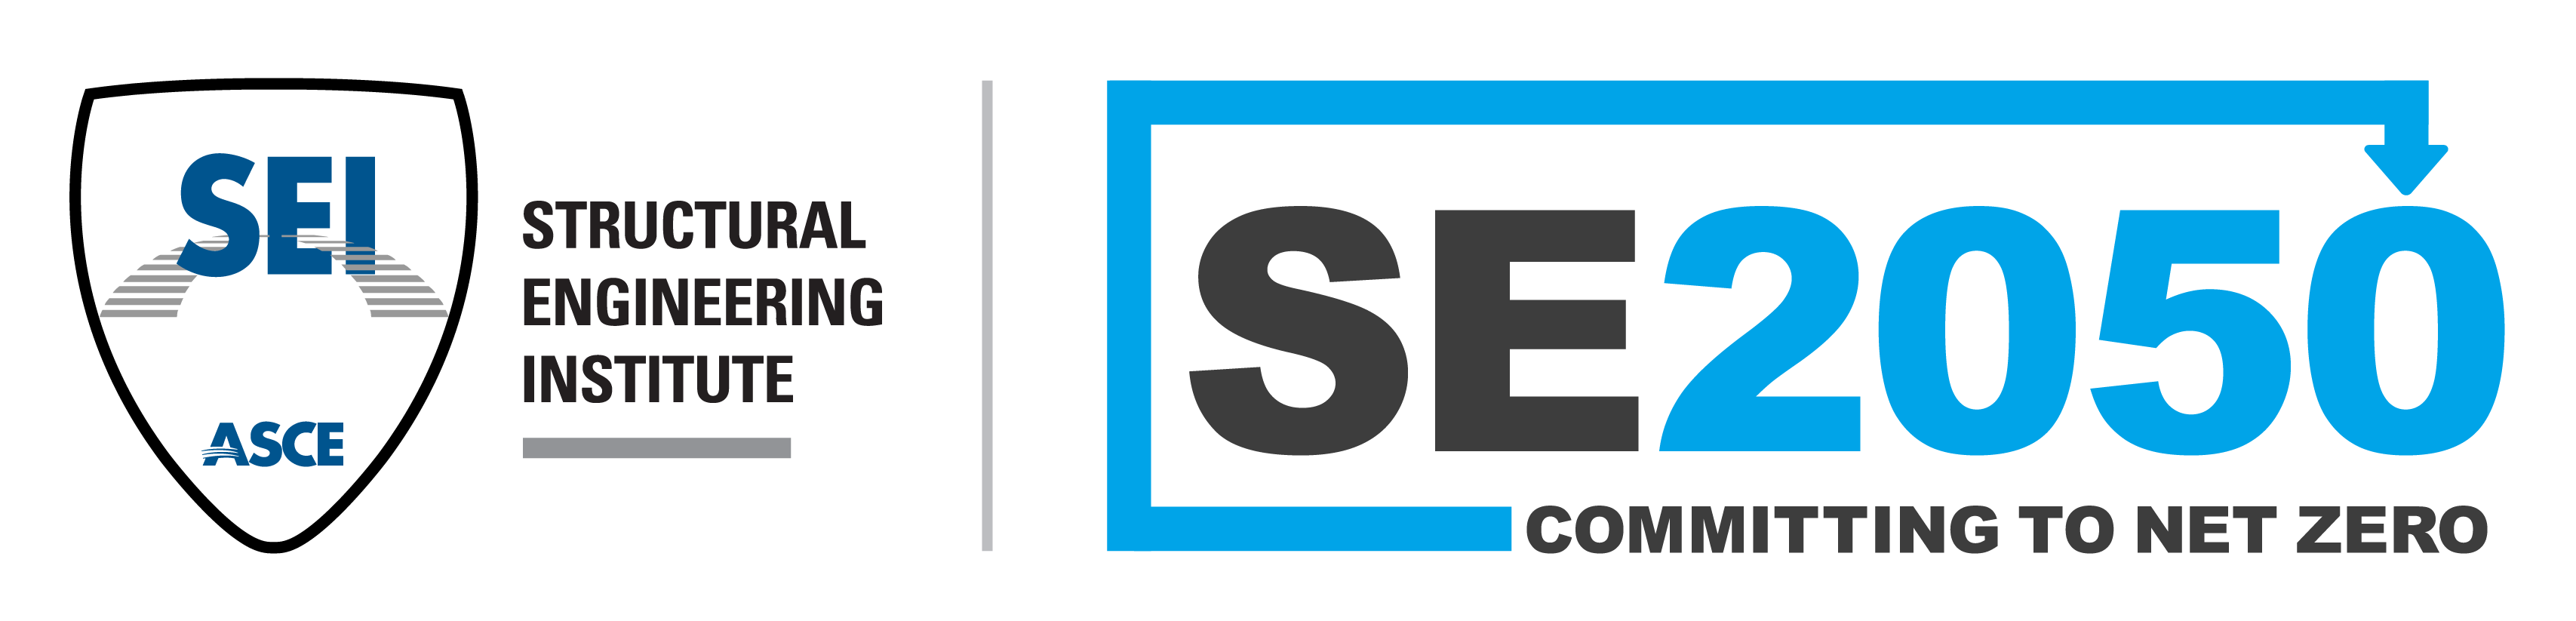 SEI_SE2050_NetZero_logo_color